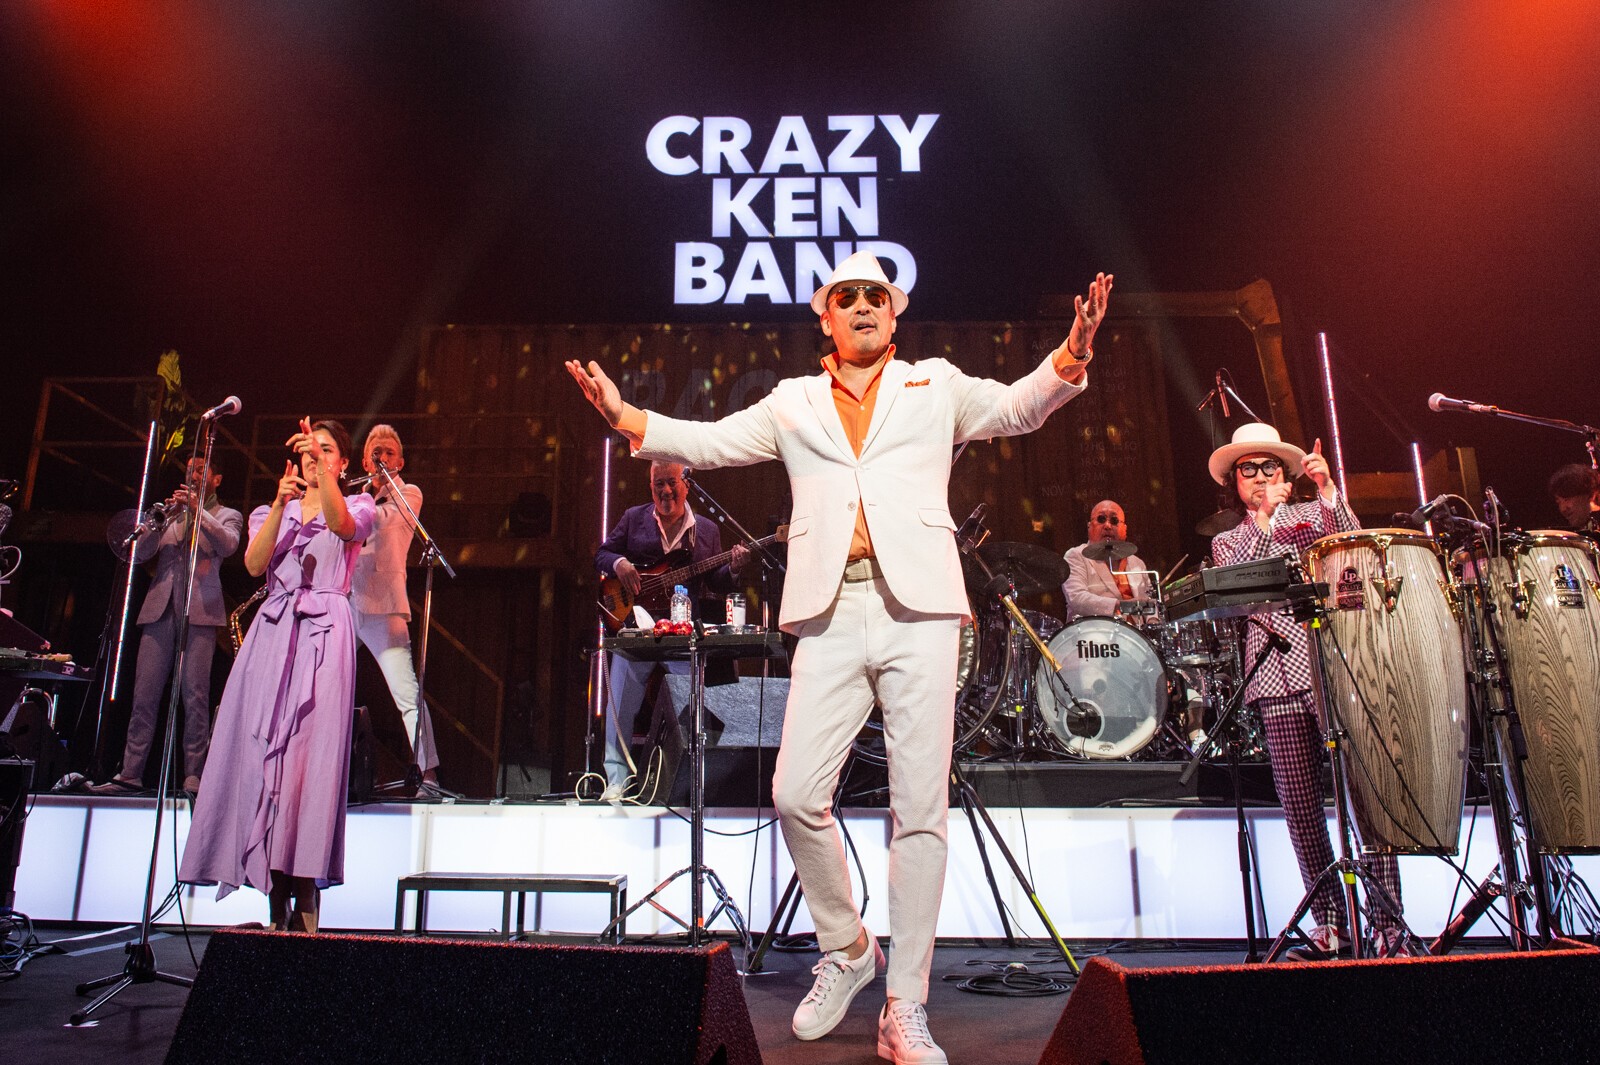 インターネットのクレイジーケンバンド 06 08 月 Tokyo Japan Crazy Ken Band